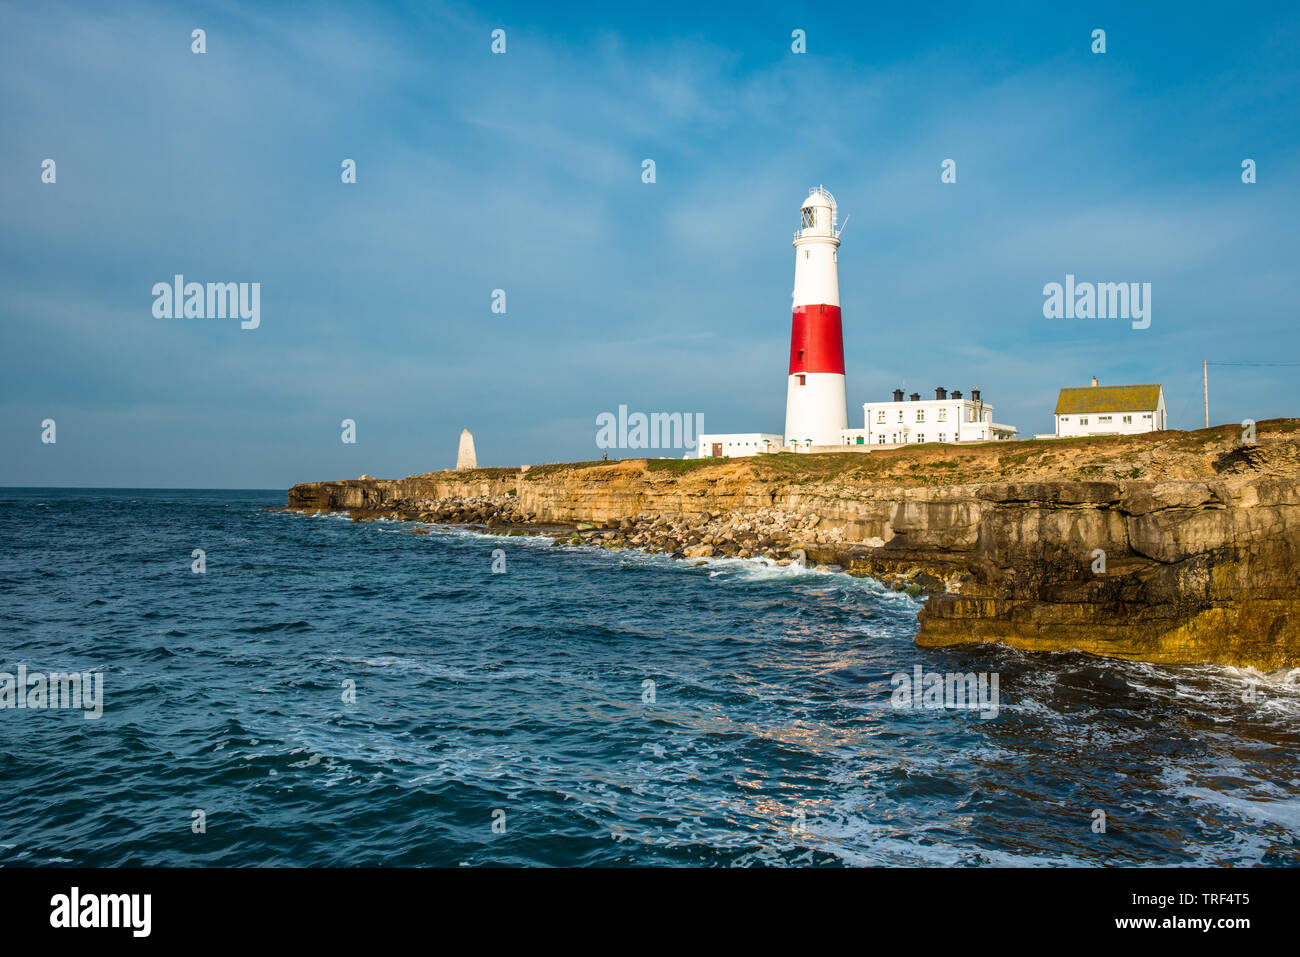 Le phare de Portland Bill sur l'Île de Portland près de Weymouth Dorset sur la côte jurassique. L'Angleterre. UK. Banque D'Images